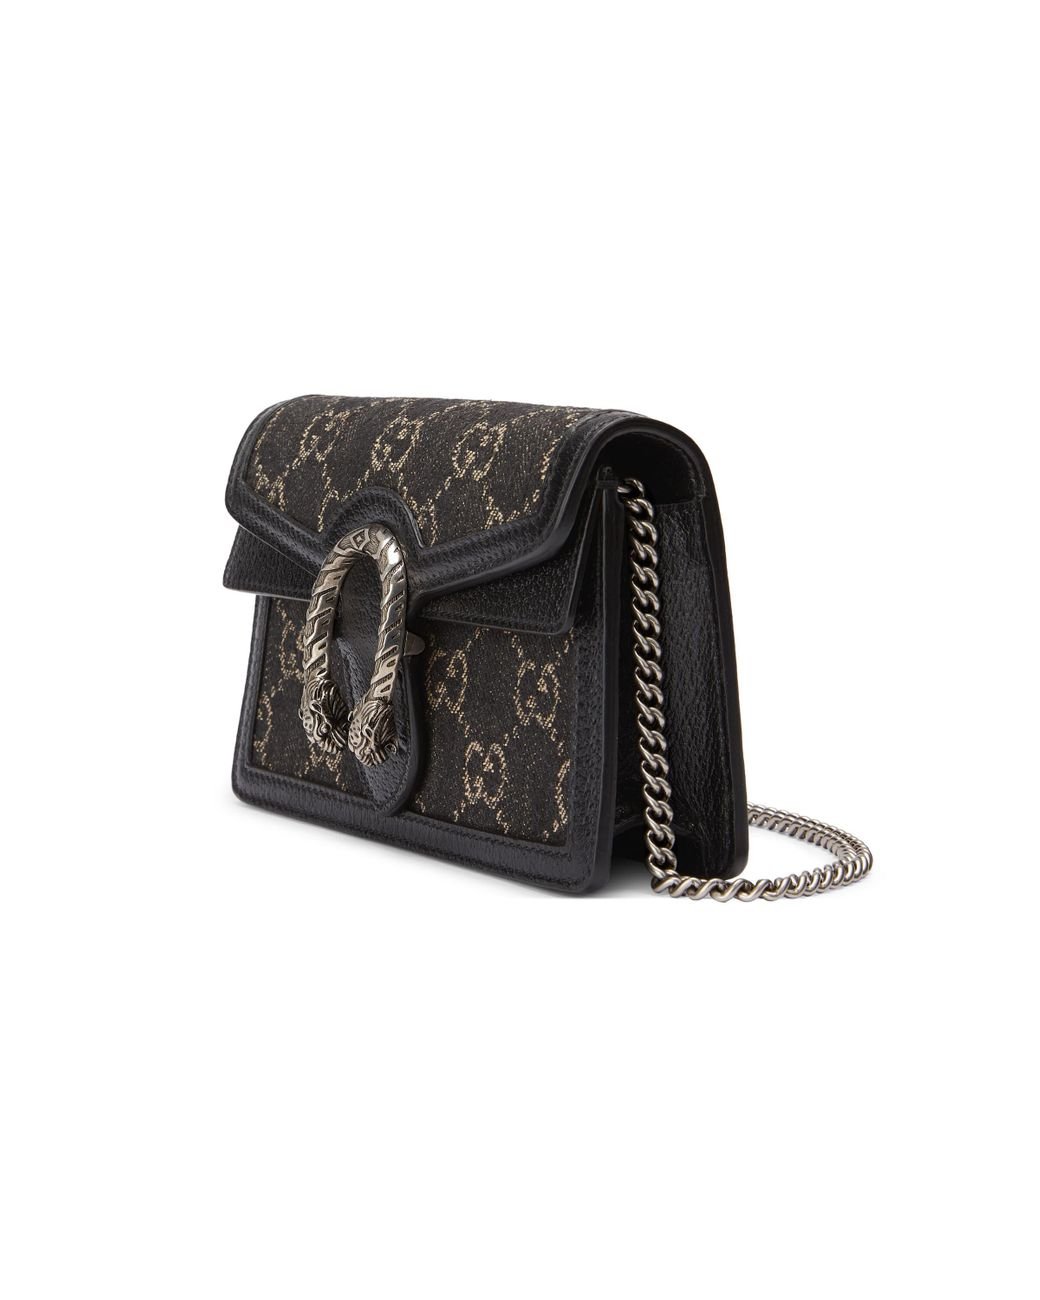 Gucci Dionysus Super Mini Handbag